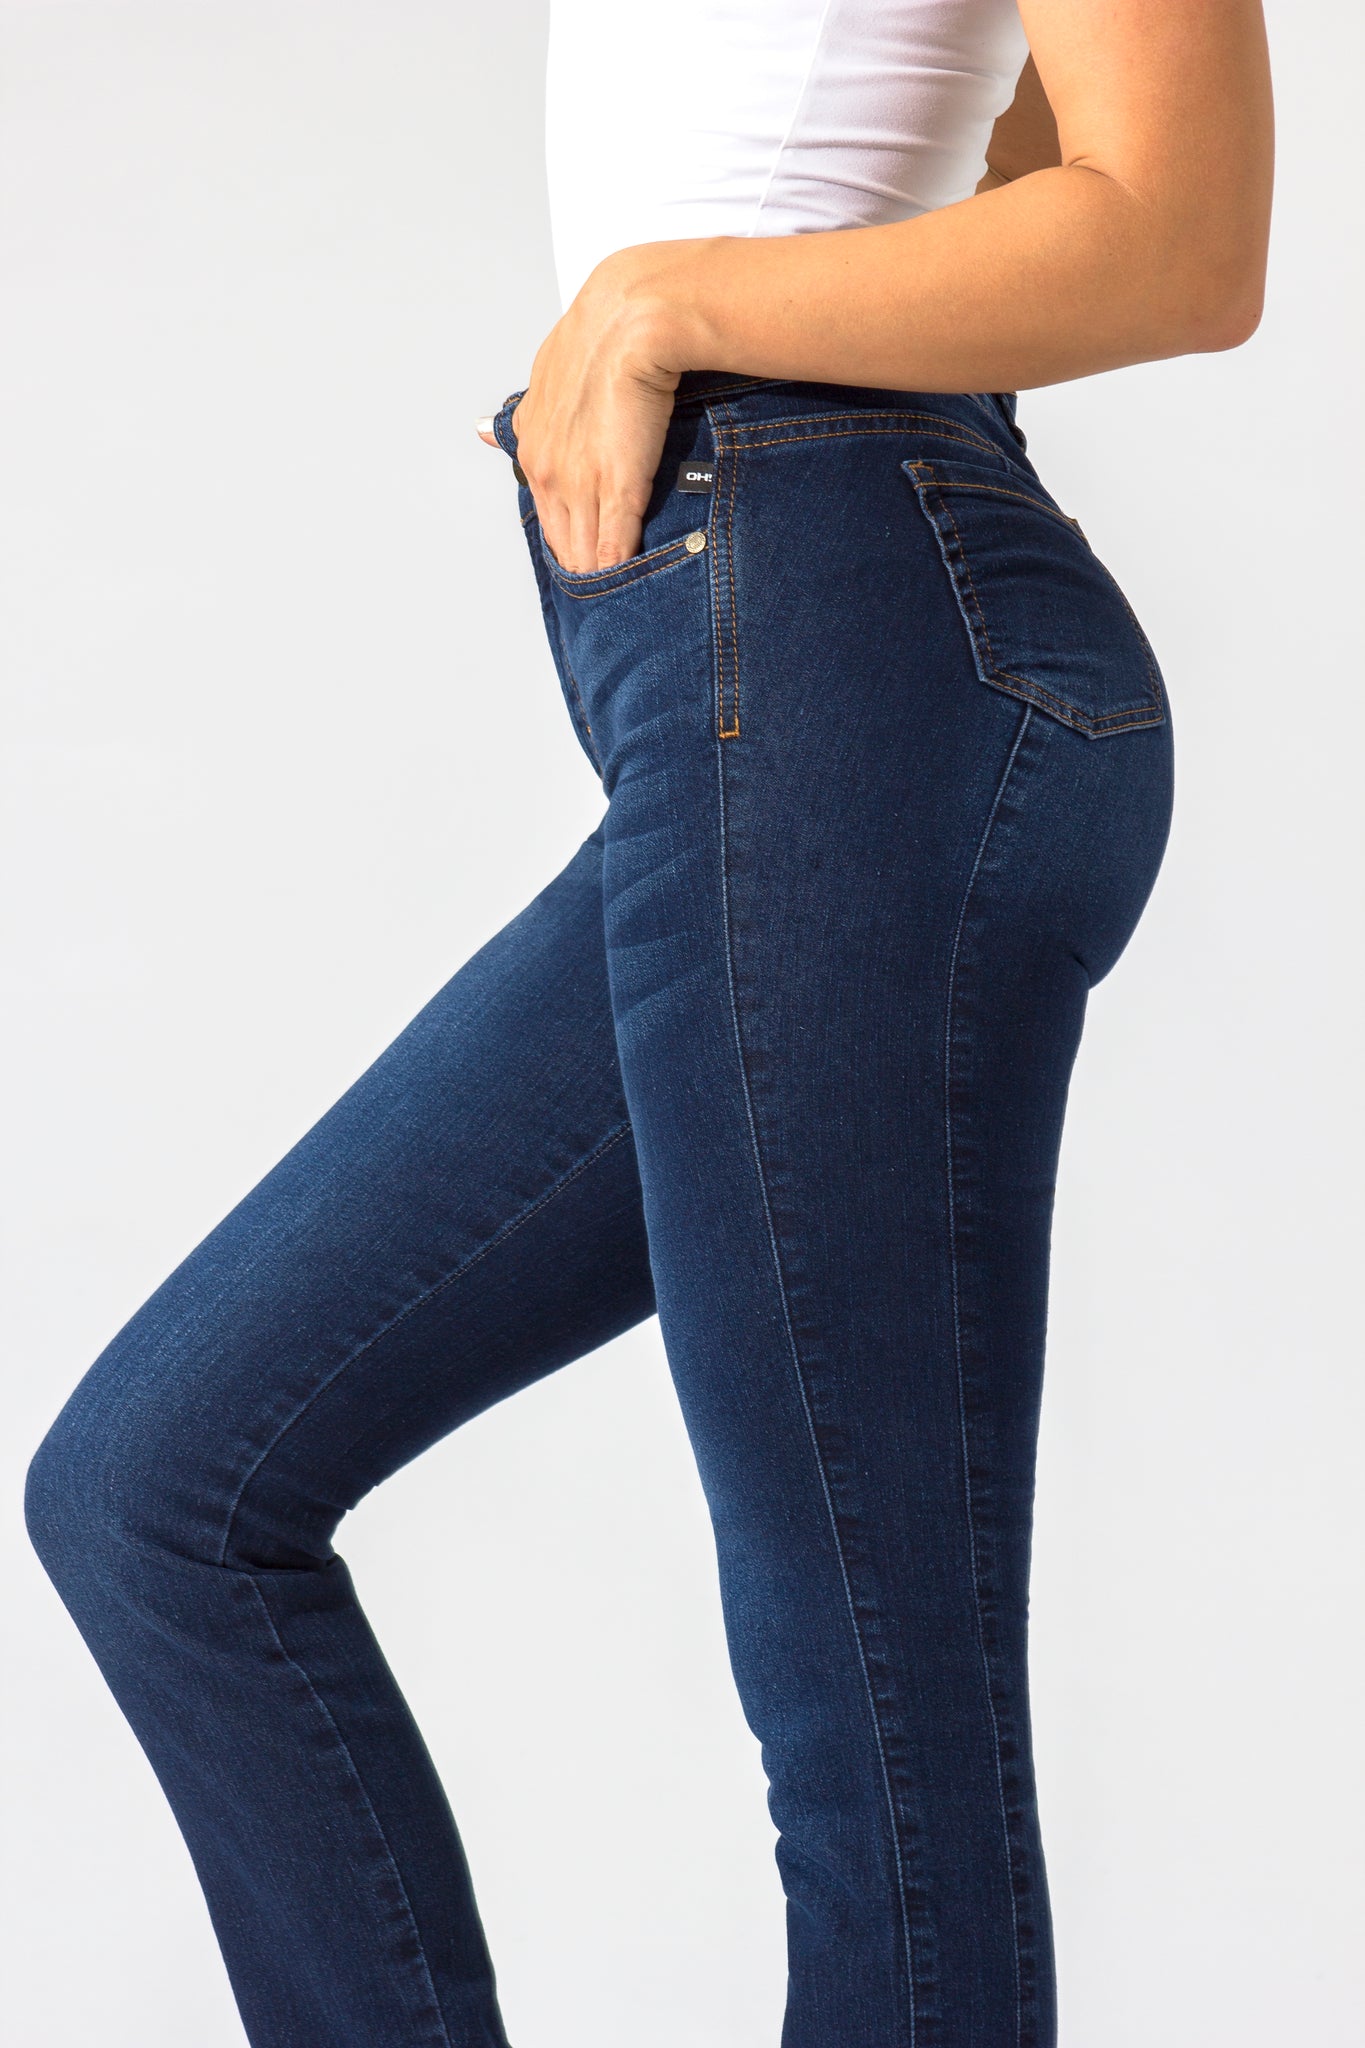 OHPOMP!® Basics, Cintura Alta Straight Jeans Azul Medio OP1006